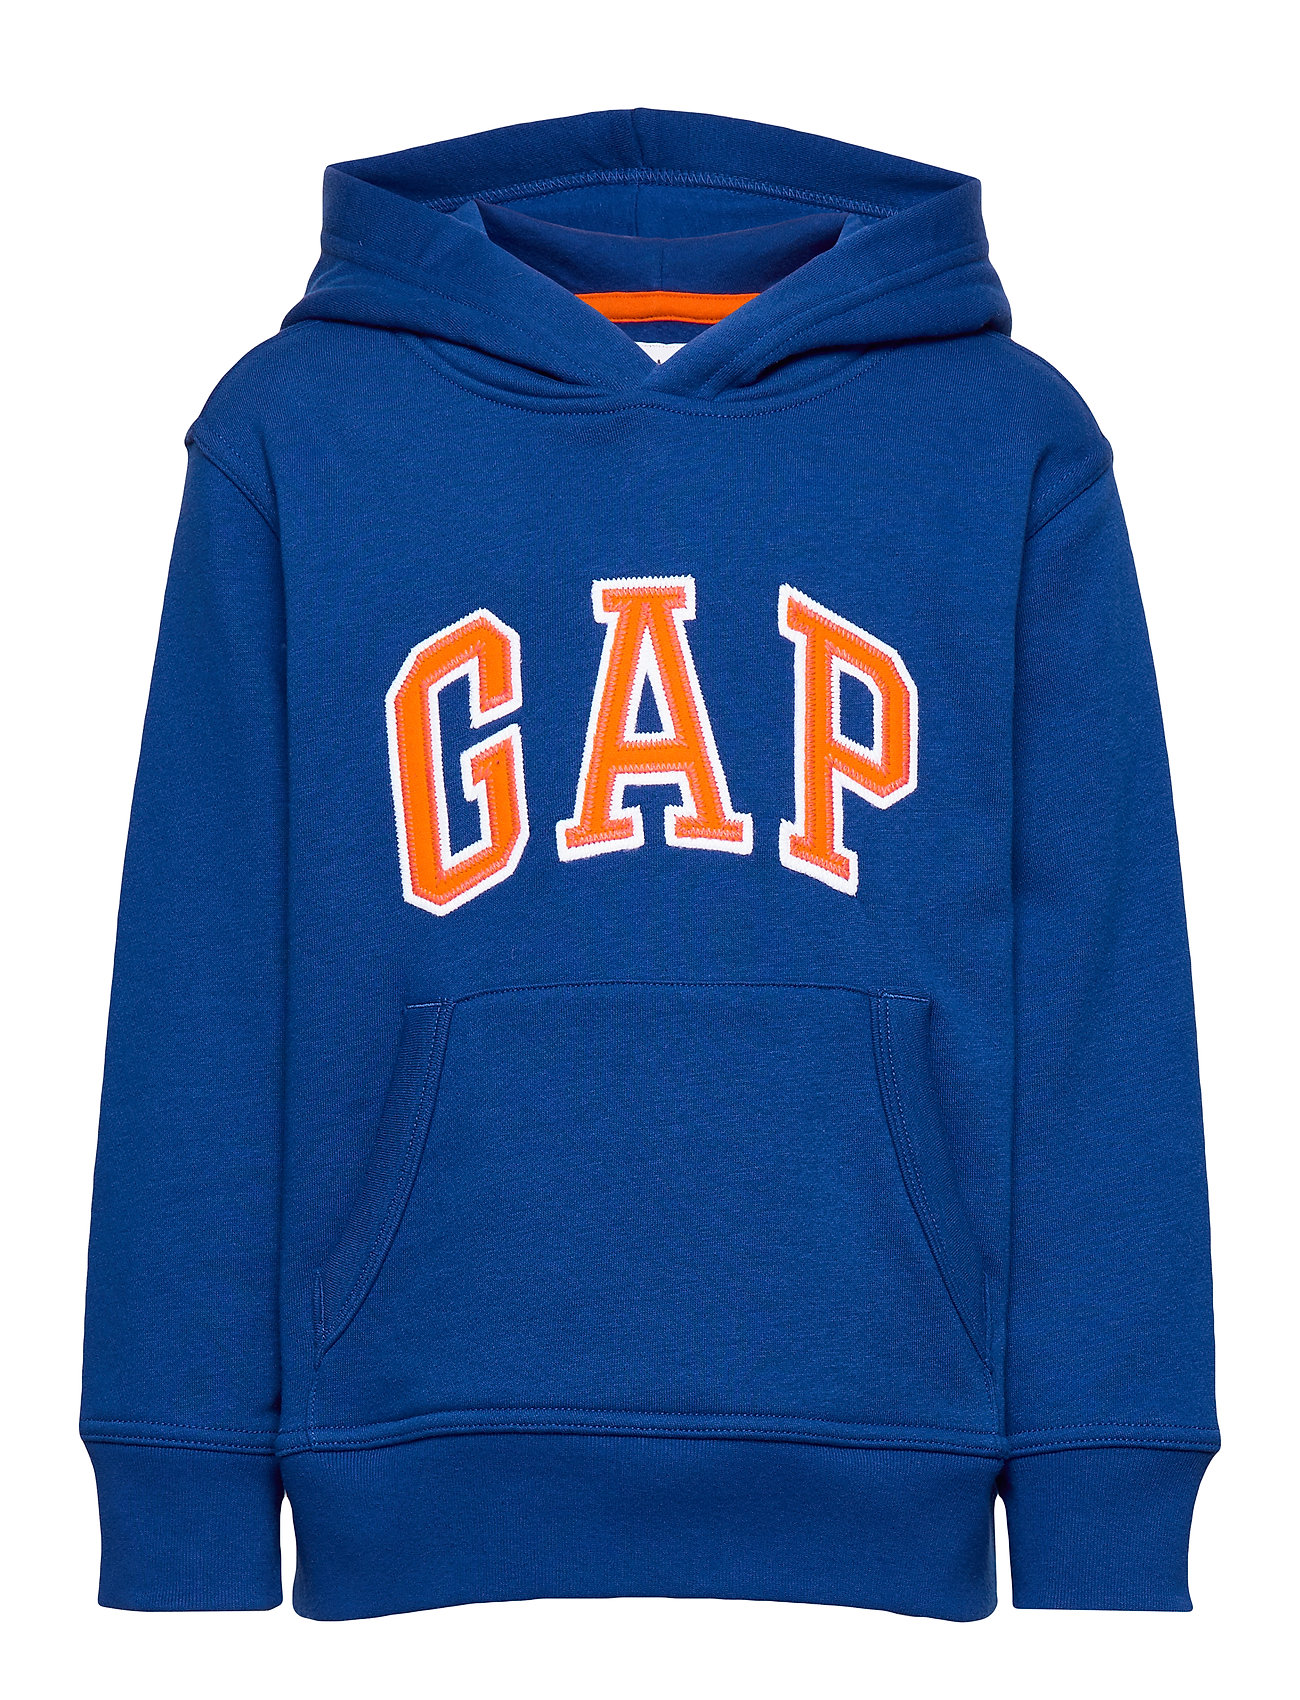 Kids Gap Logo Hoodie Sweatshirt (Brilliant Blue) (£16.80) - GAP ...